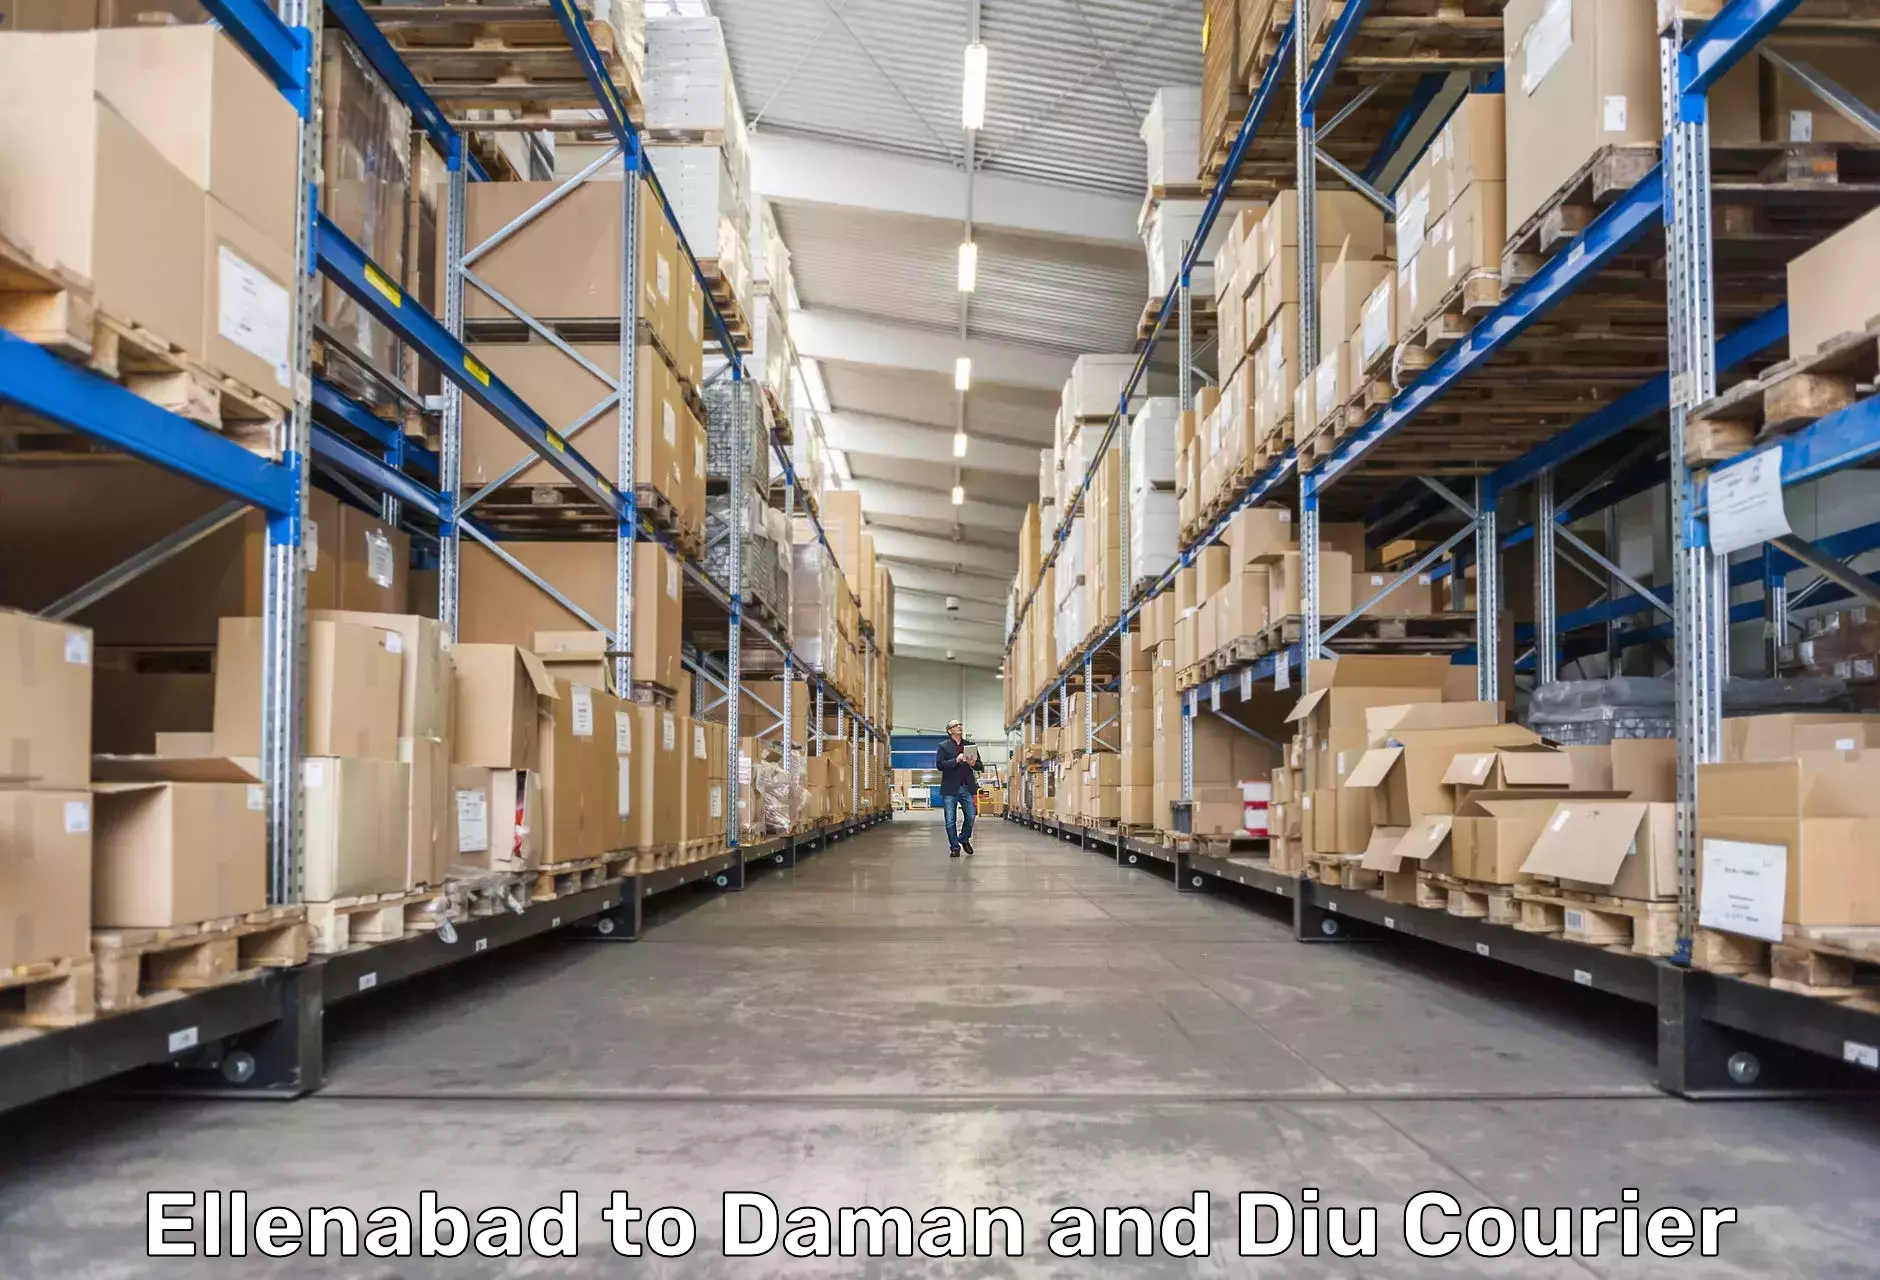 Affordable parcel service Ellenabad to Daman